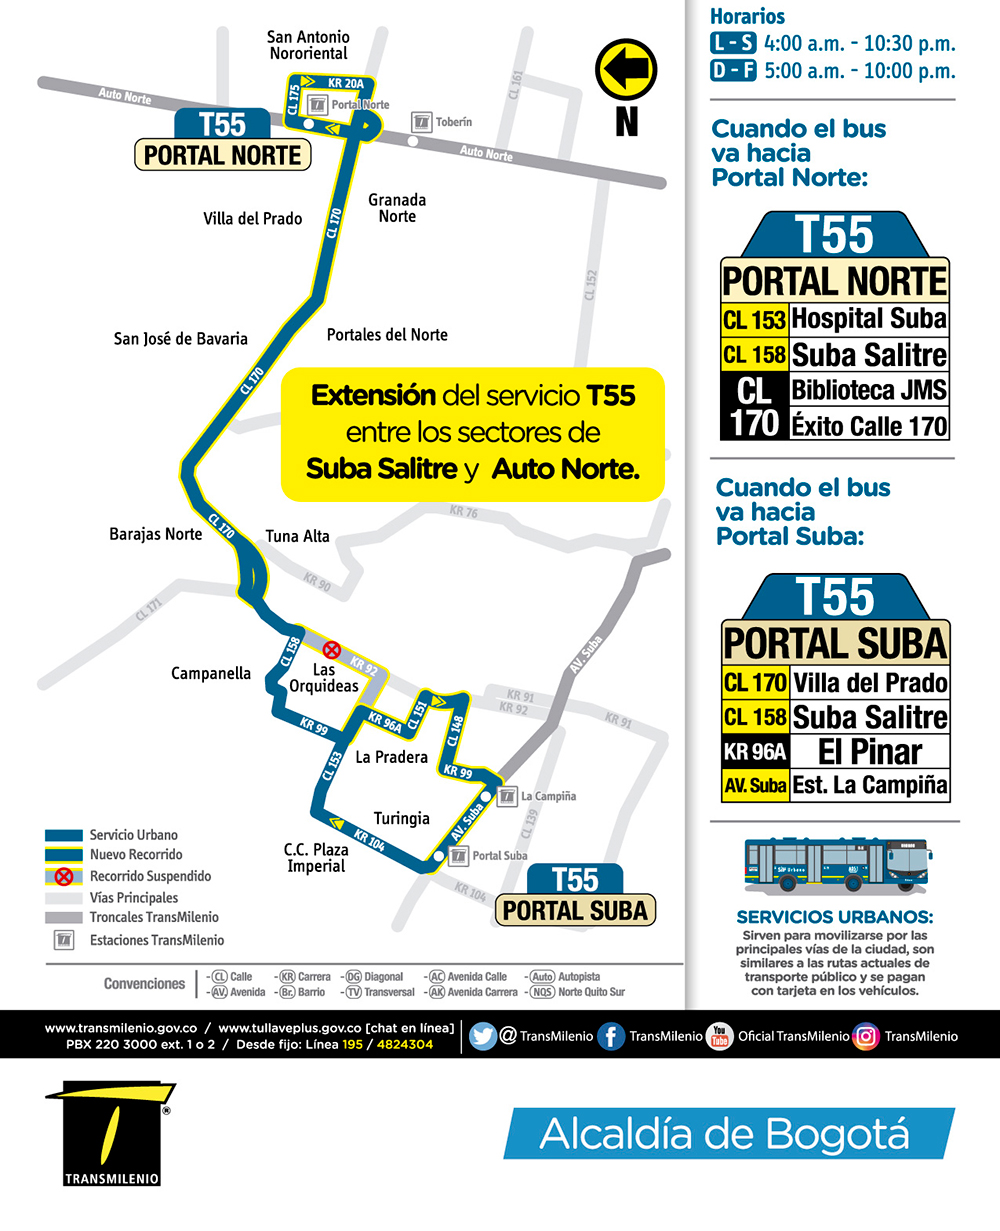 Información de la ruta urbana T55